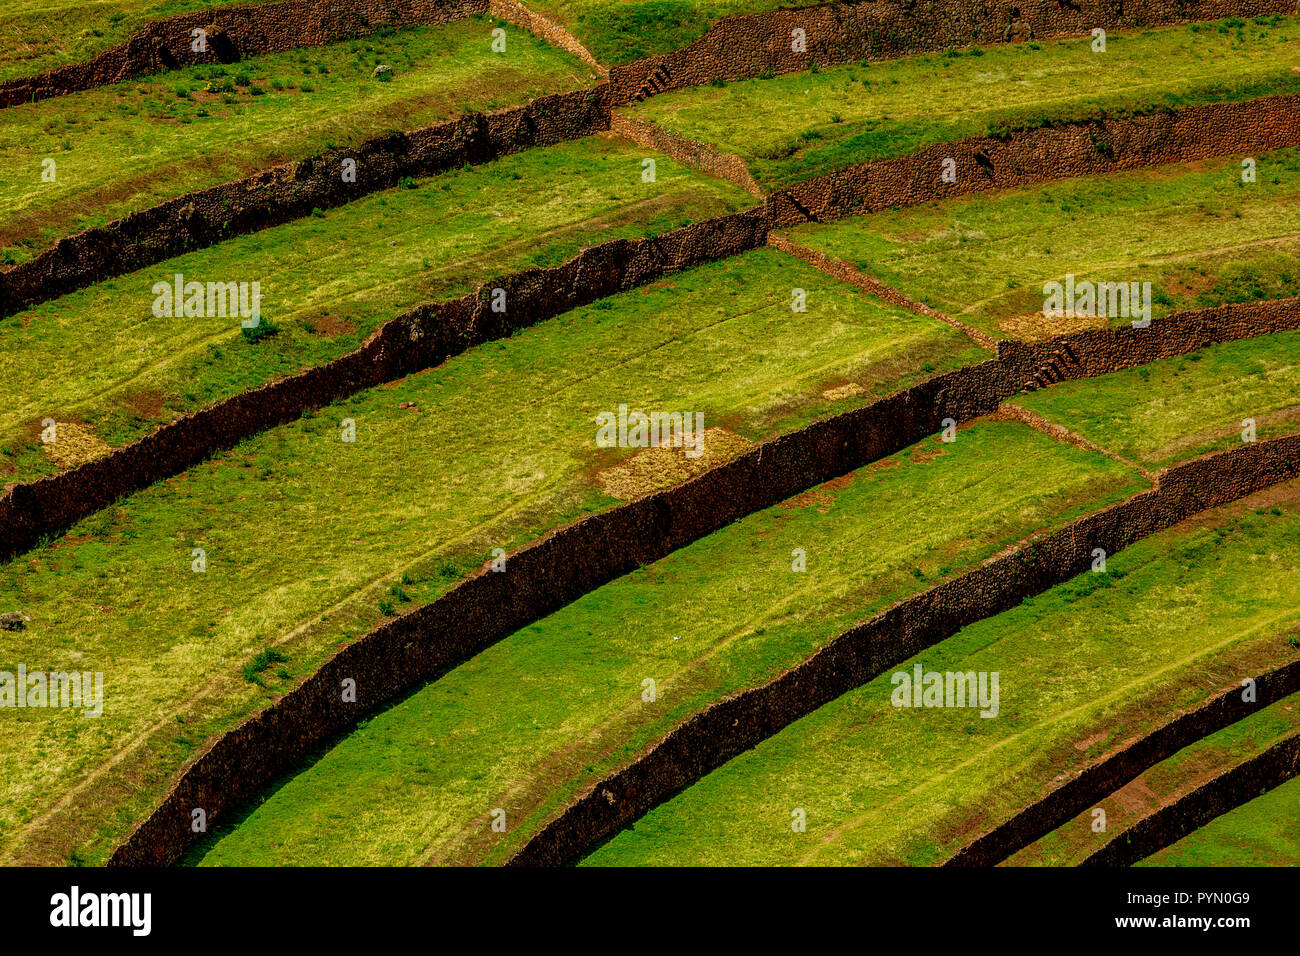 Altertümliche Anbaumethode der Inka für Lebensmittel , Terrassen , au Pérou , Südamerika Banque D'Images